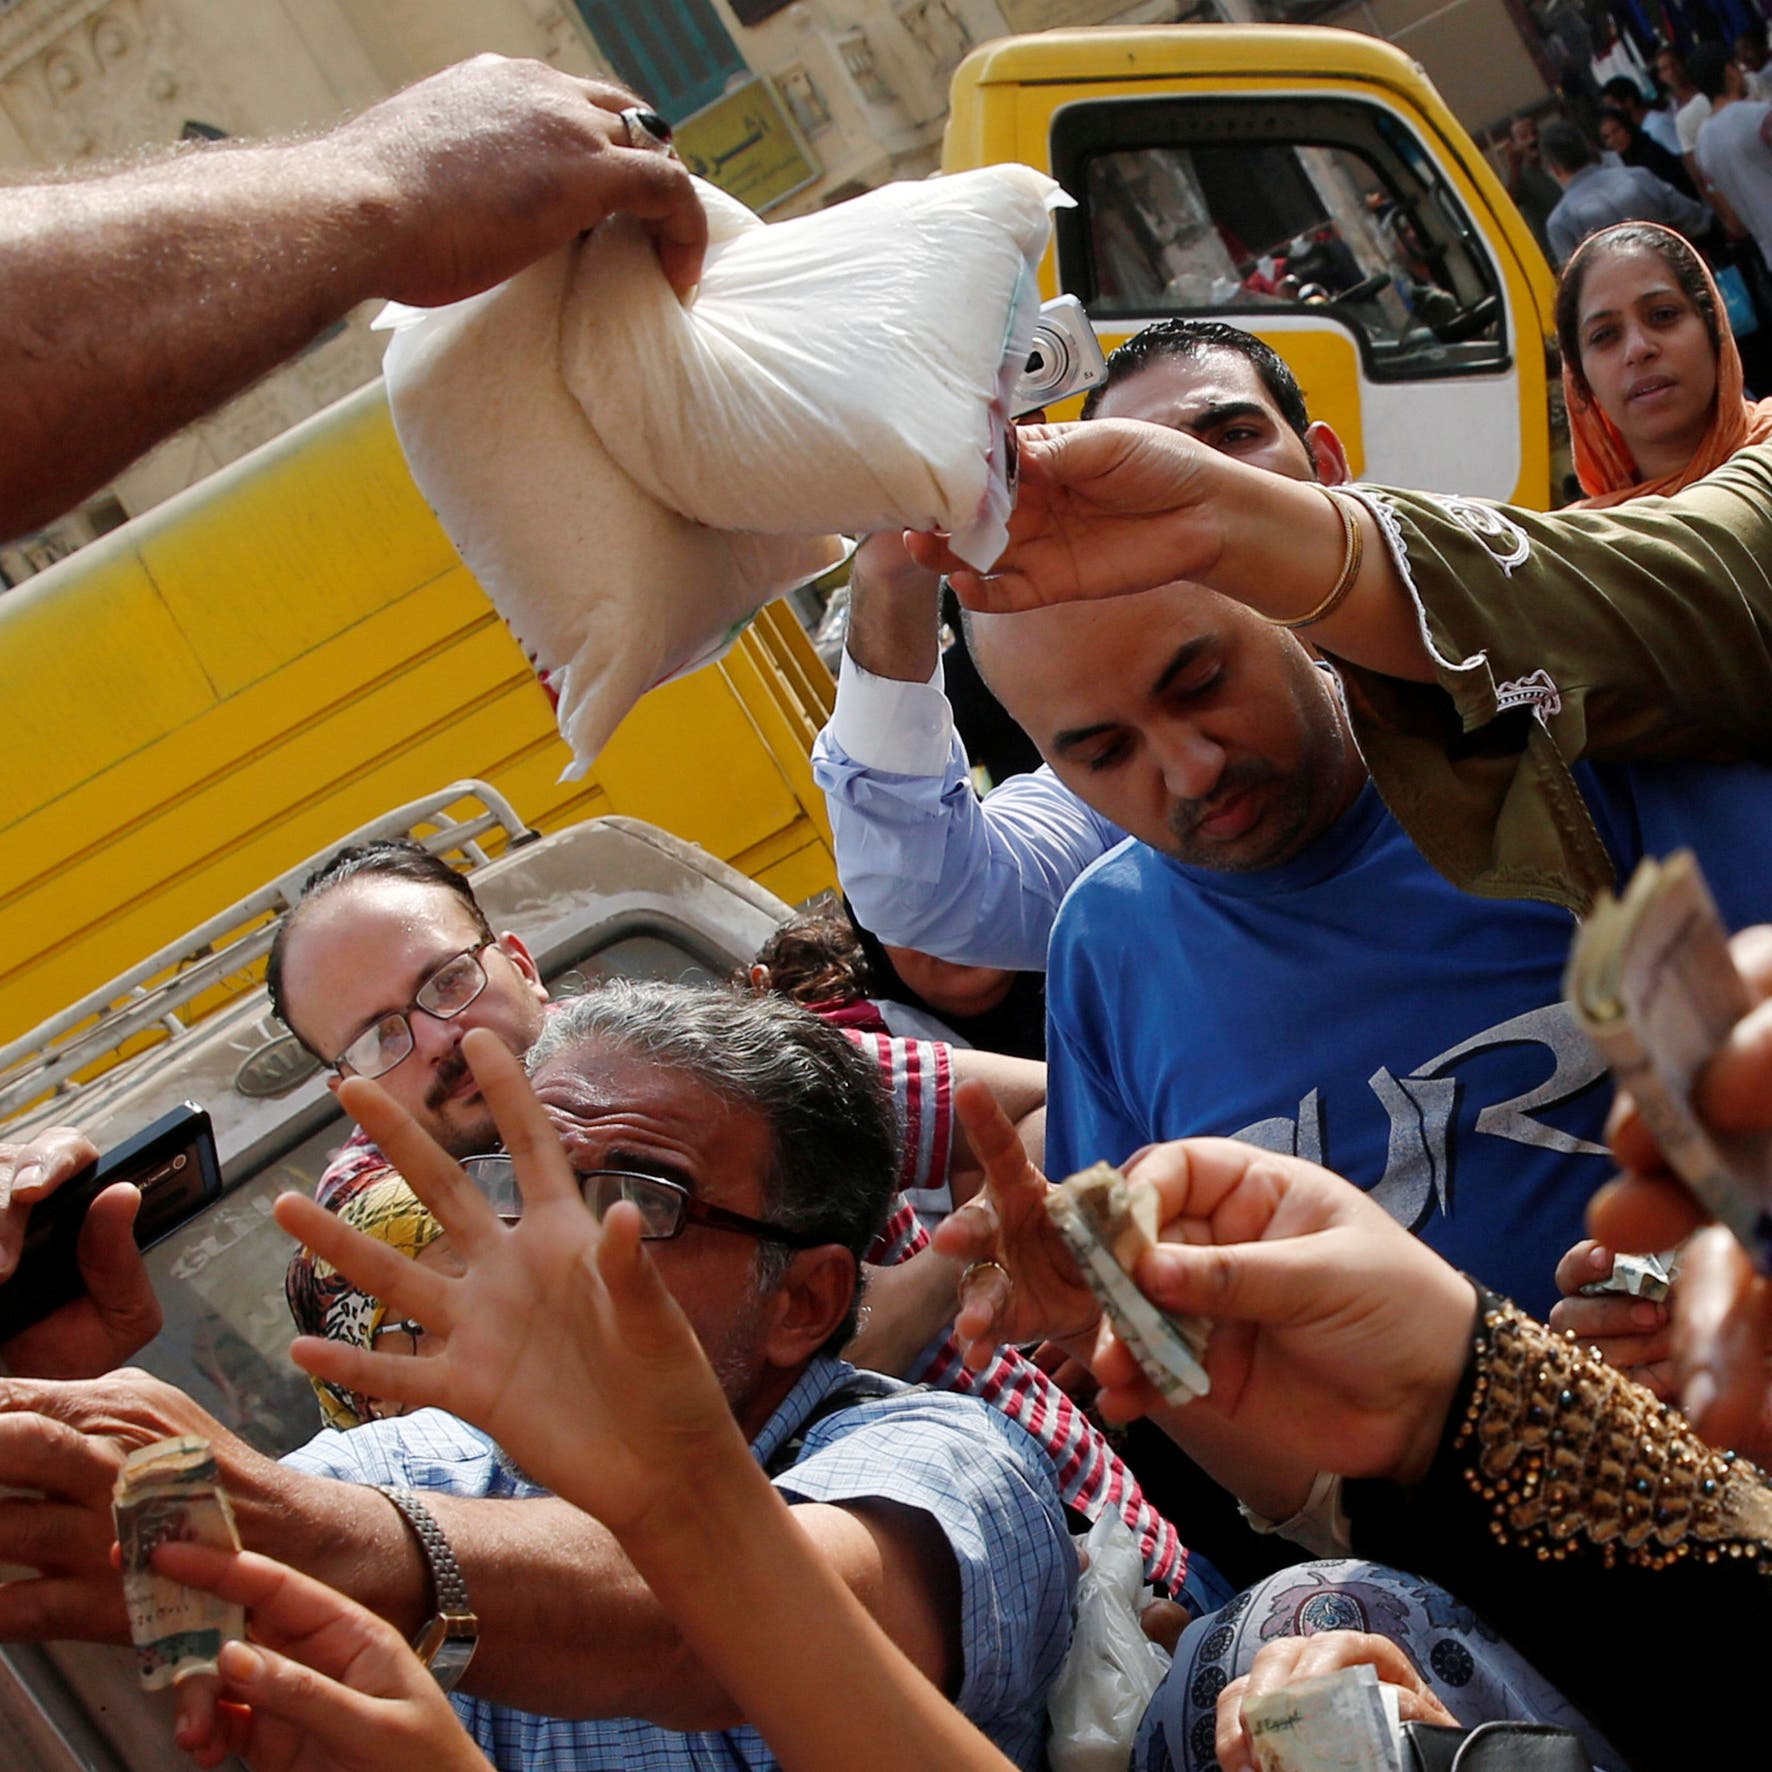 مصر توضح أسباب زيادة أسعار بعض السلع المدعمة